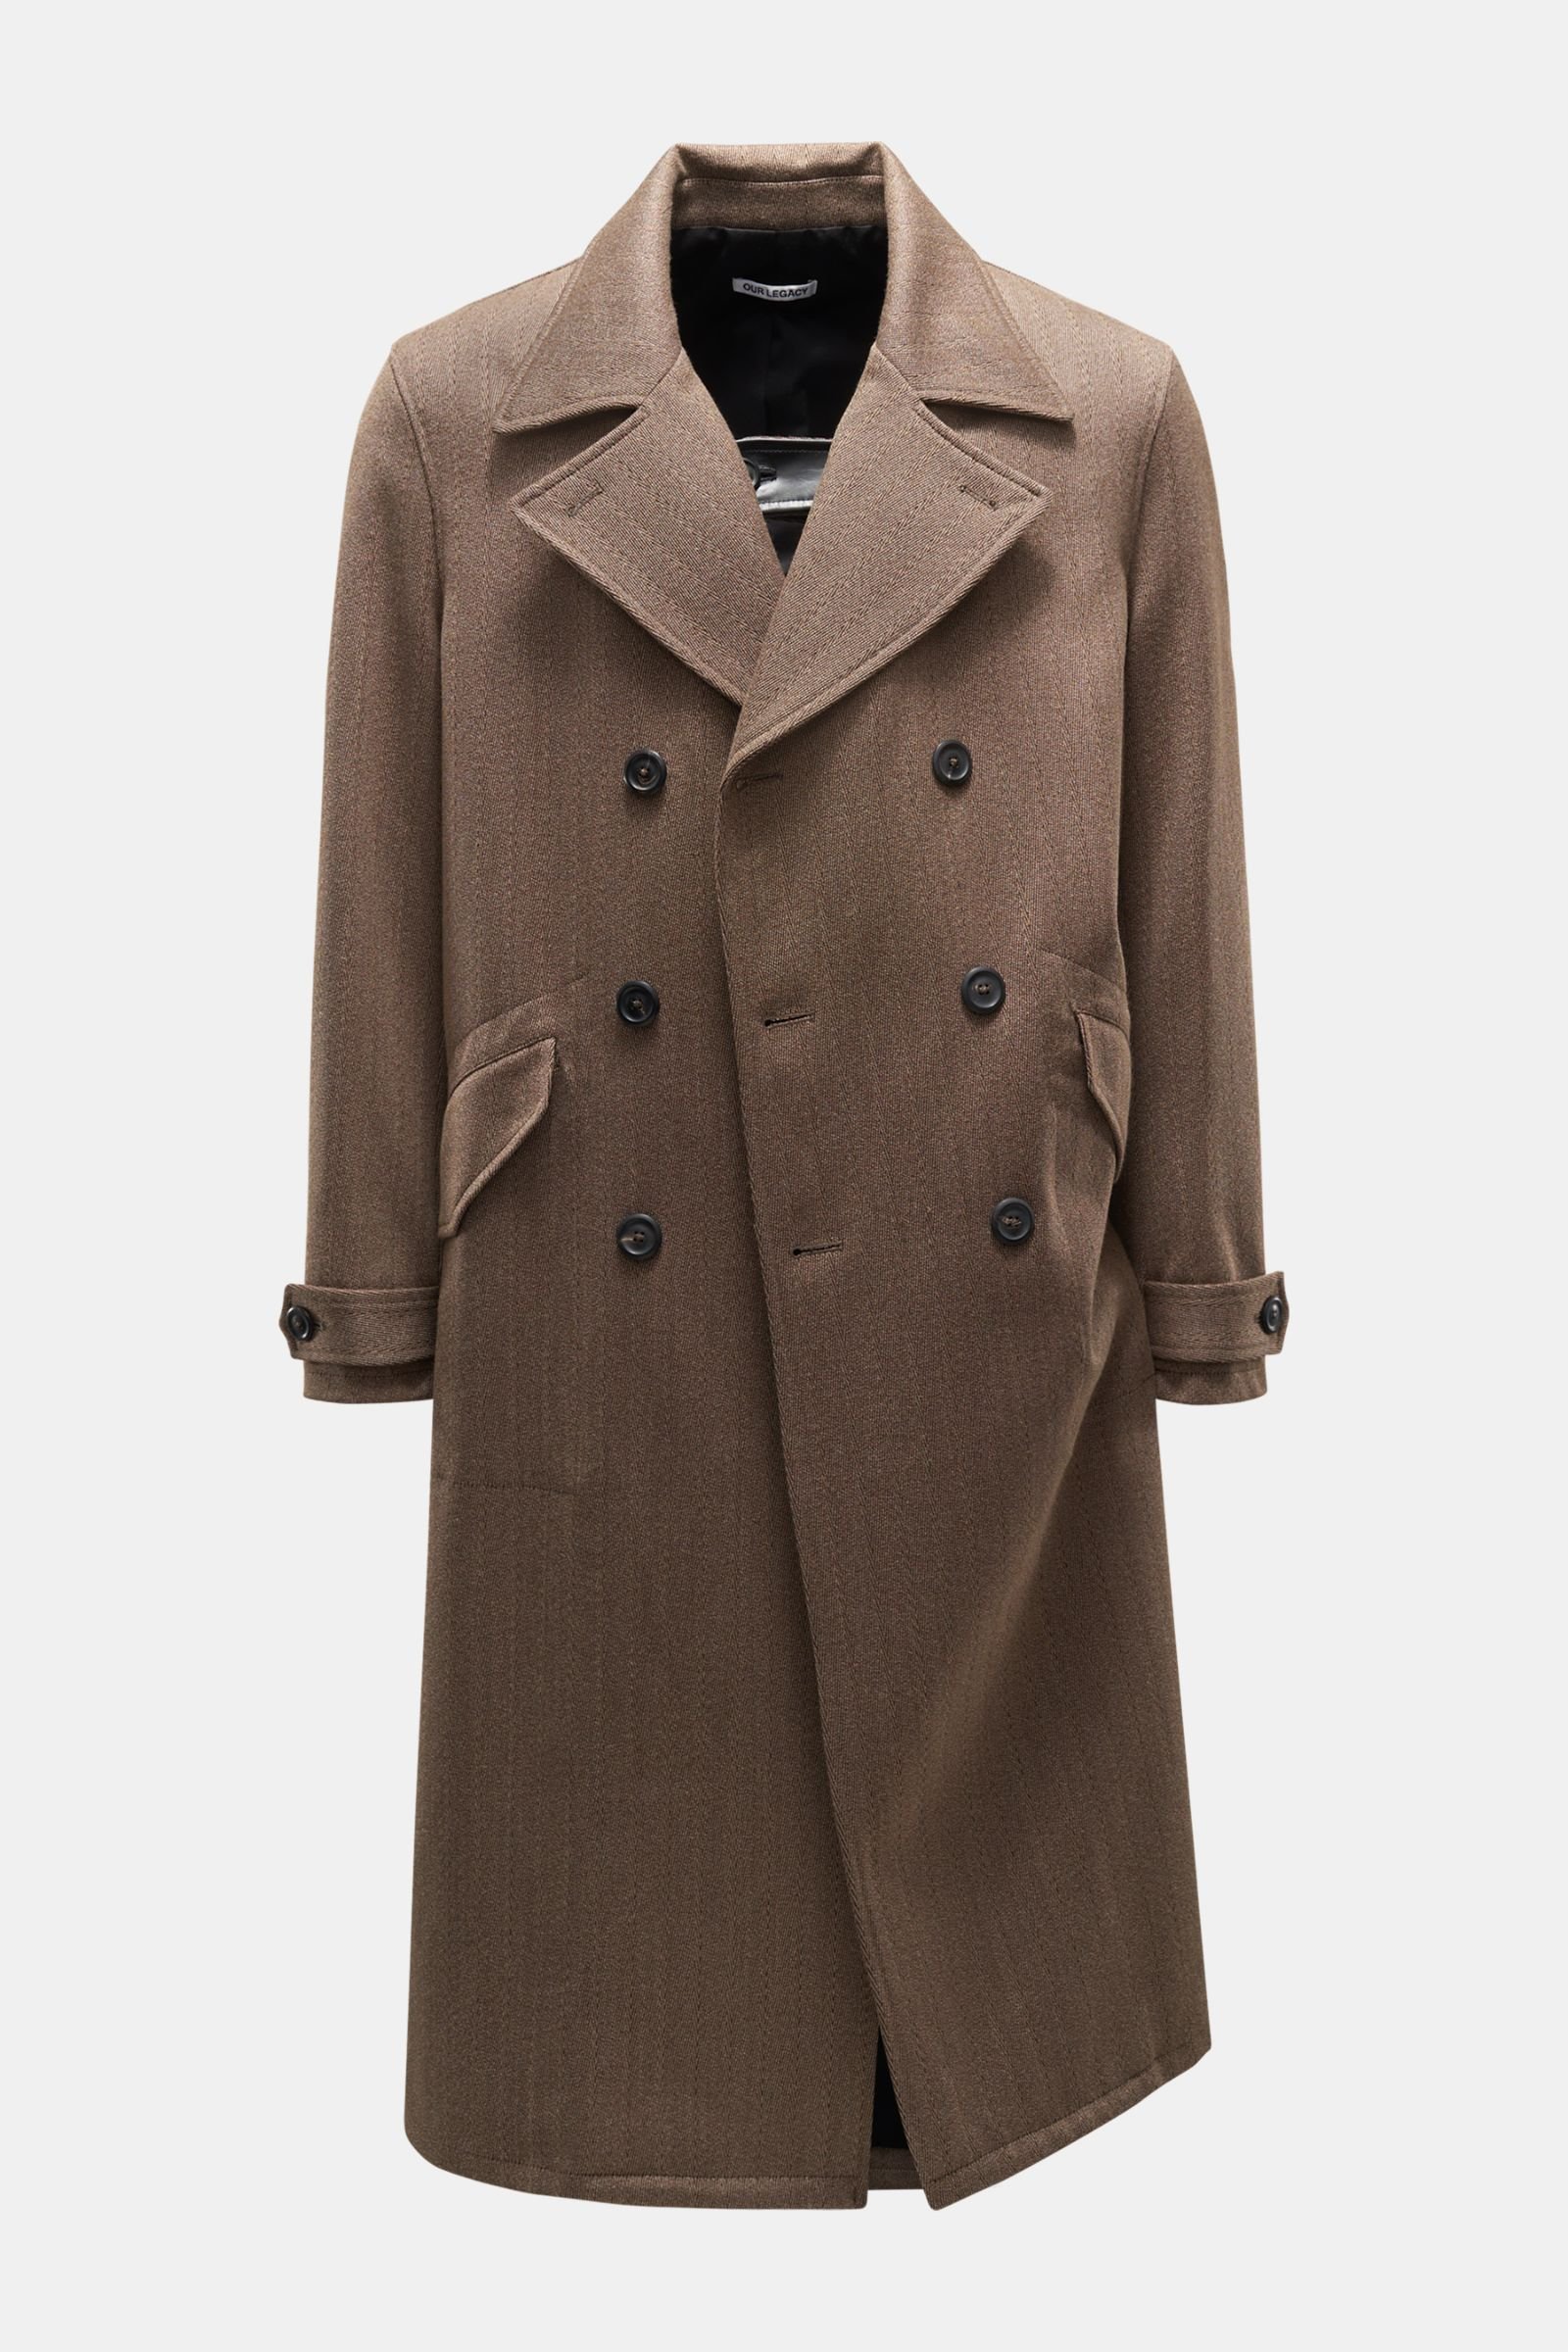 Coat 'Long DB Buta Coat' grey-brown